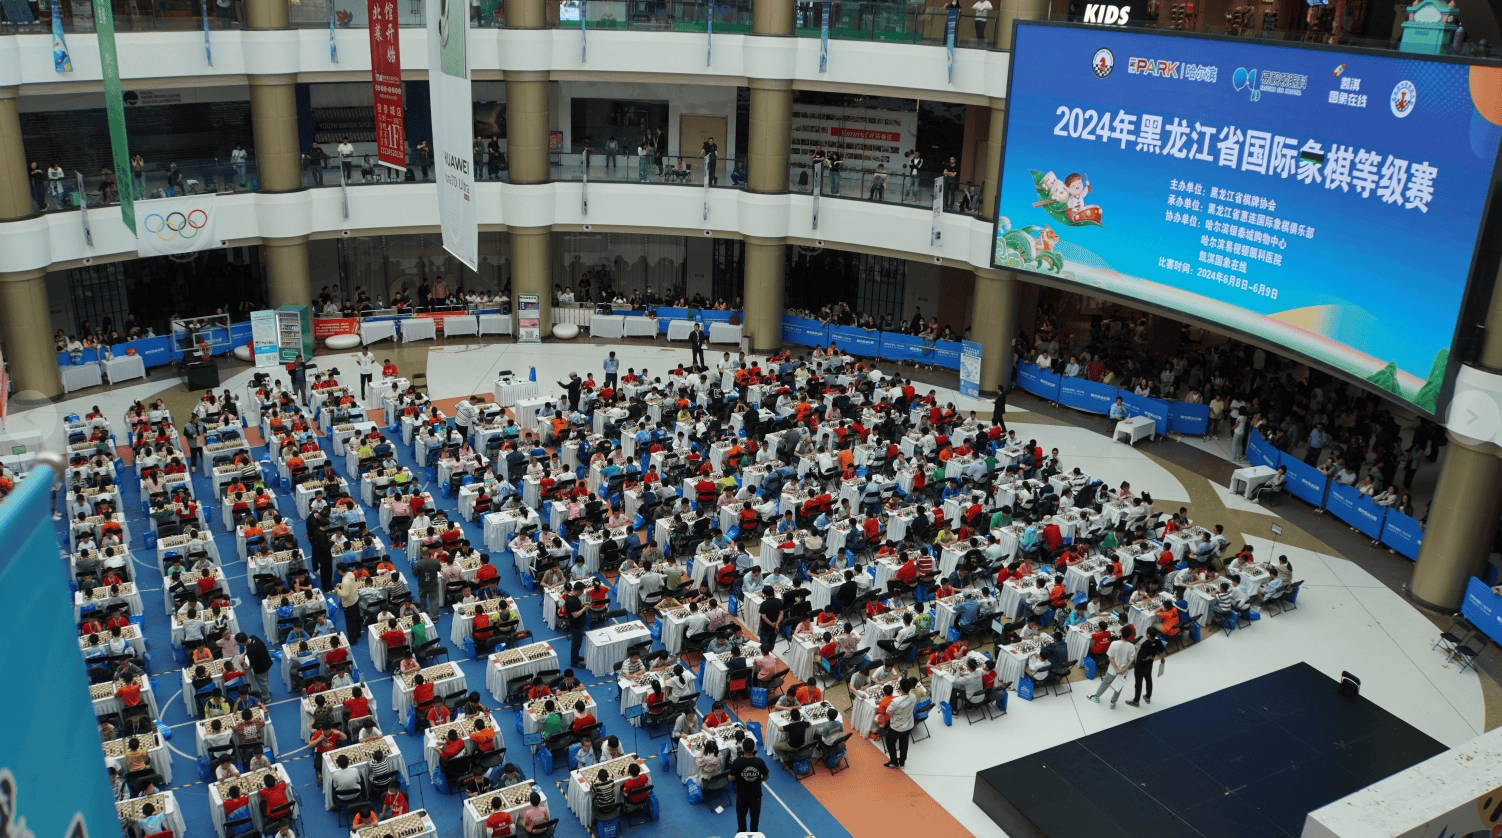 同时,比赛还促进了各市地间国际象棋交流,为黑龙江省国际象棋事业注入